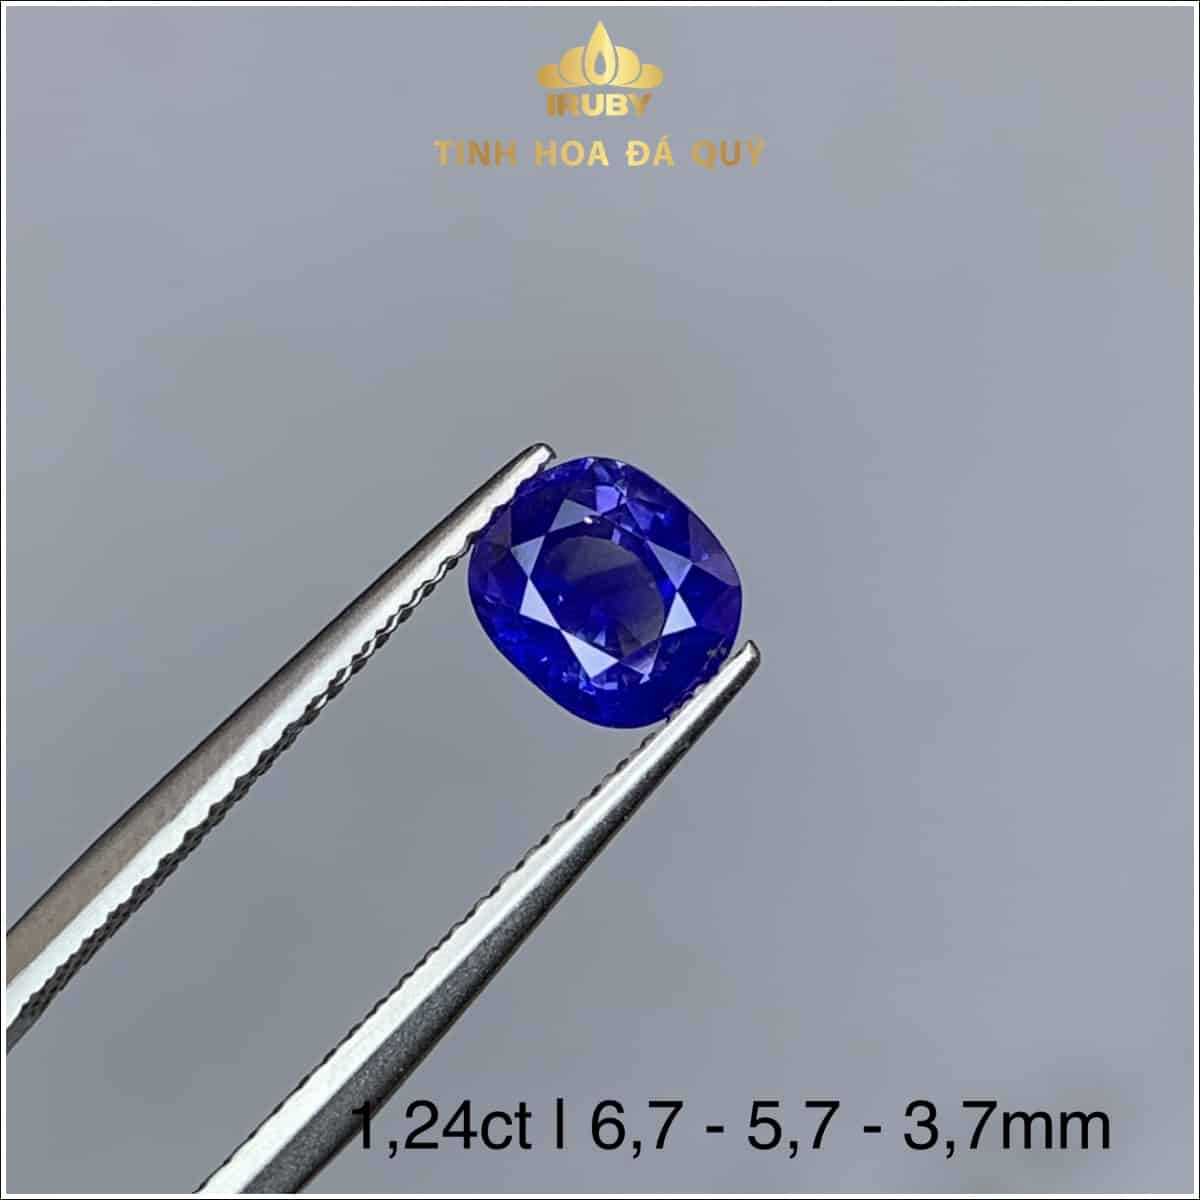 Viên Sapphire xanh lam hoàng gia 1,24ct - IRSP 235124 hình ảnh 3